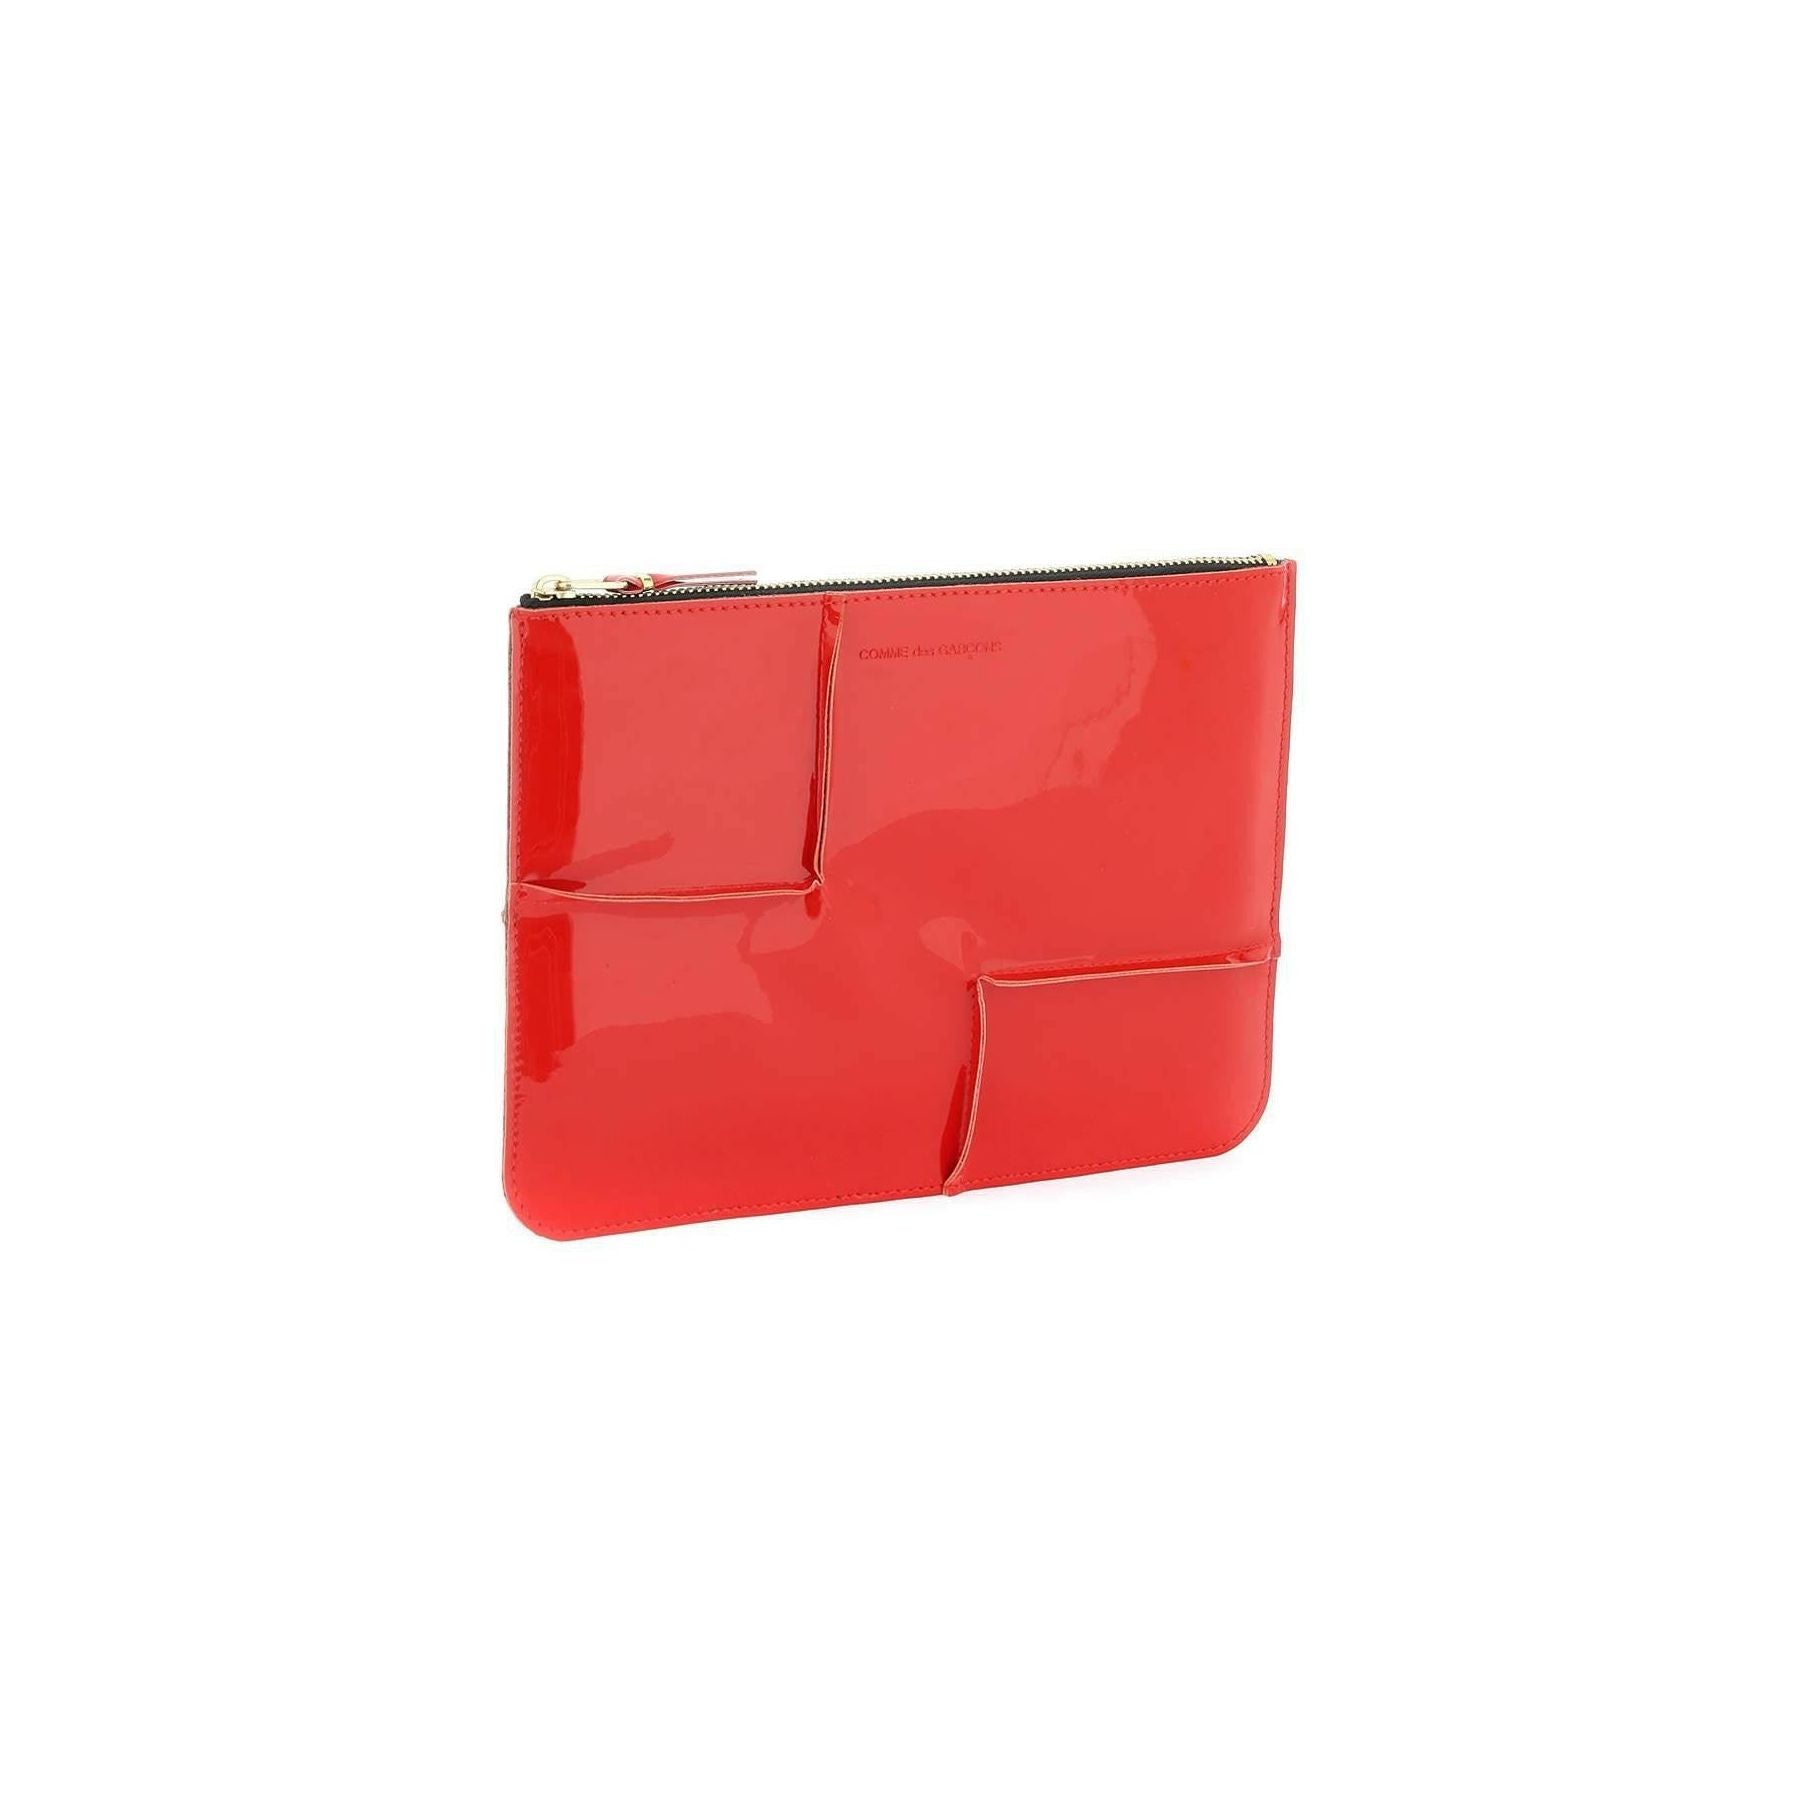 Comme des Garçons Red Glossy Patent Leather Pouch COMME DES GARCONS WALLET JOHN JULIA.